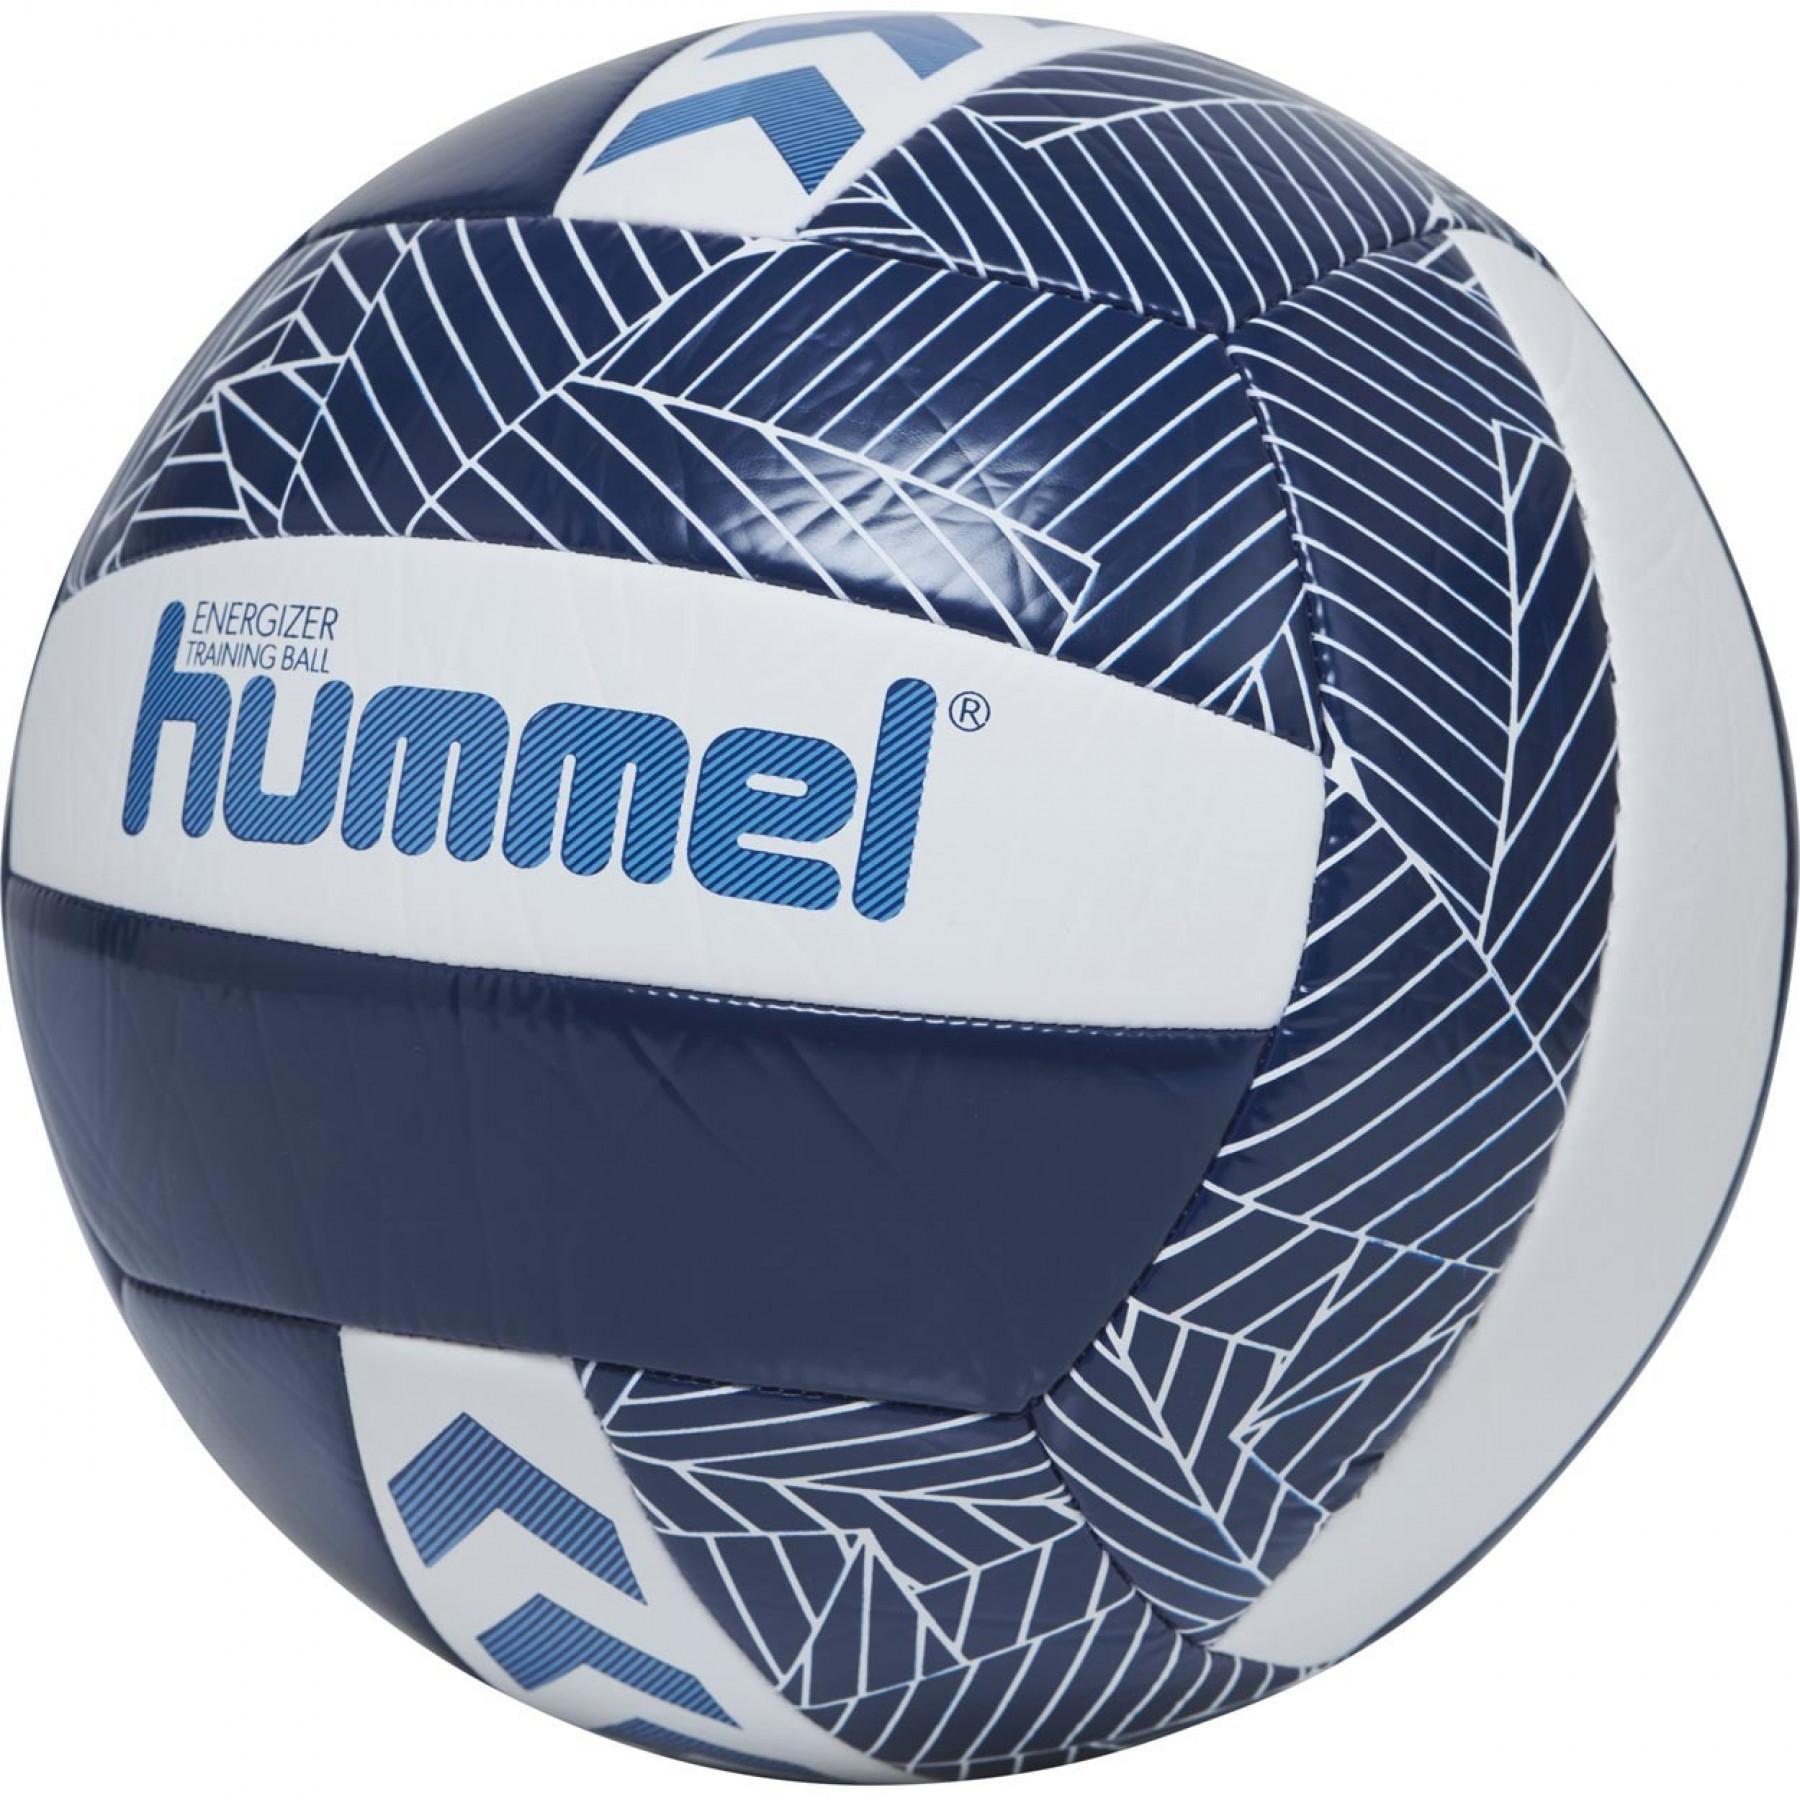 Set van 5 volleyballen Hummel Energizer [Taille5]